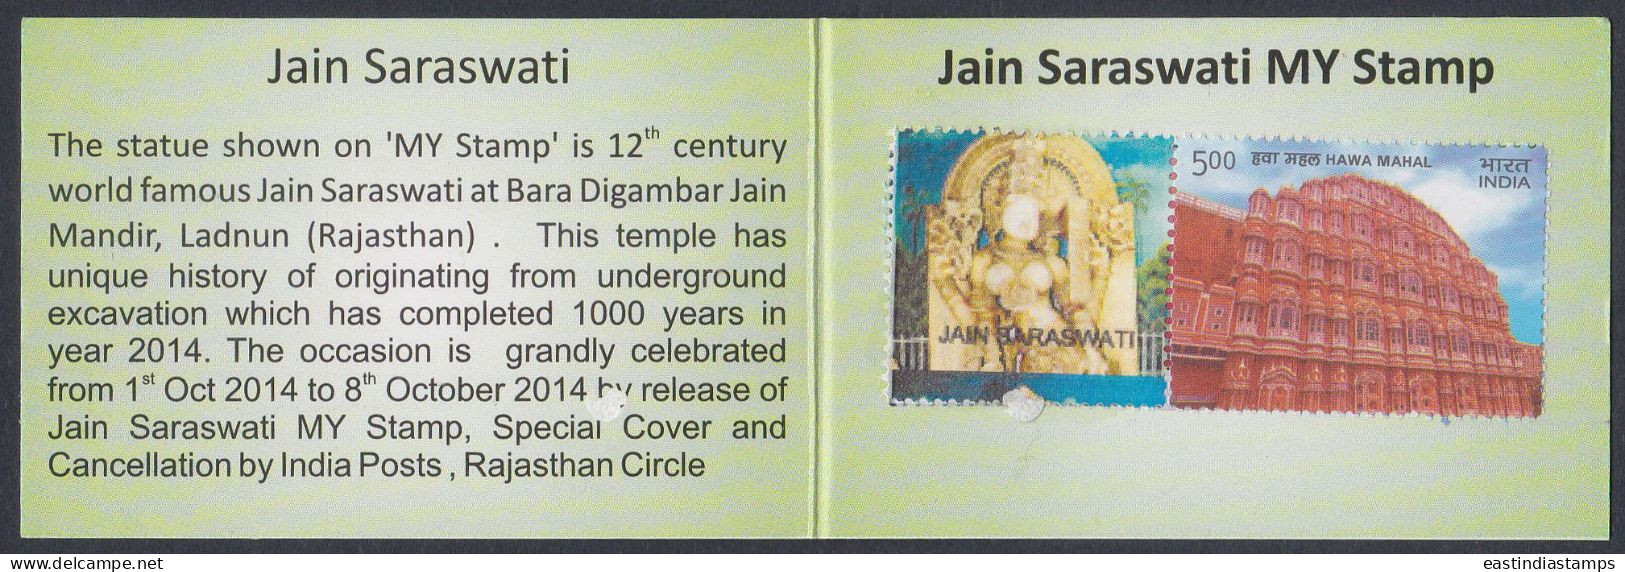 Inde India 2014 Mint Stamp Booklet Schoolpex, Exhibition, School, St. Xavier's, Jaipur - Andere & Zonder Classificatie